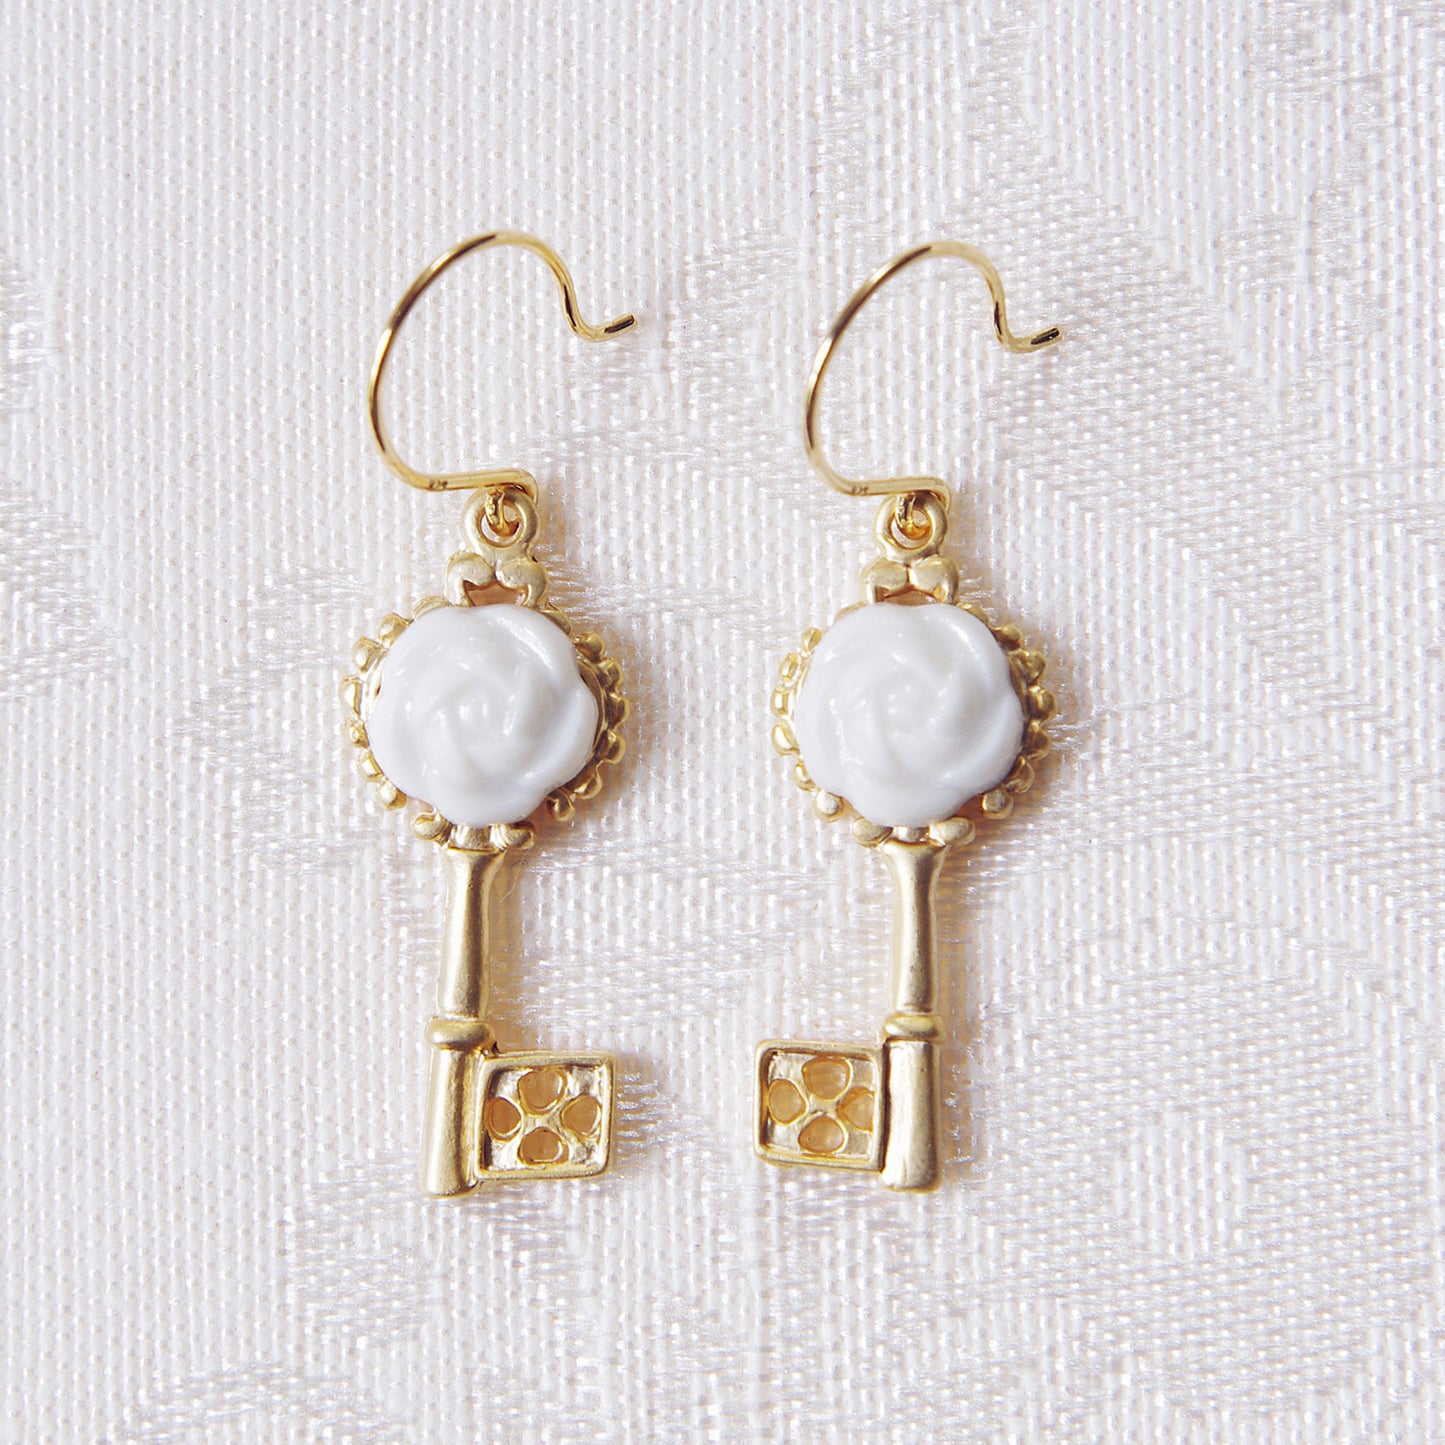 Porcelain Camellia Golden Key Earrings